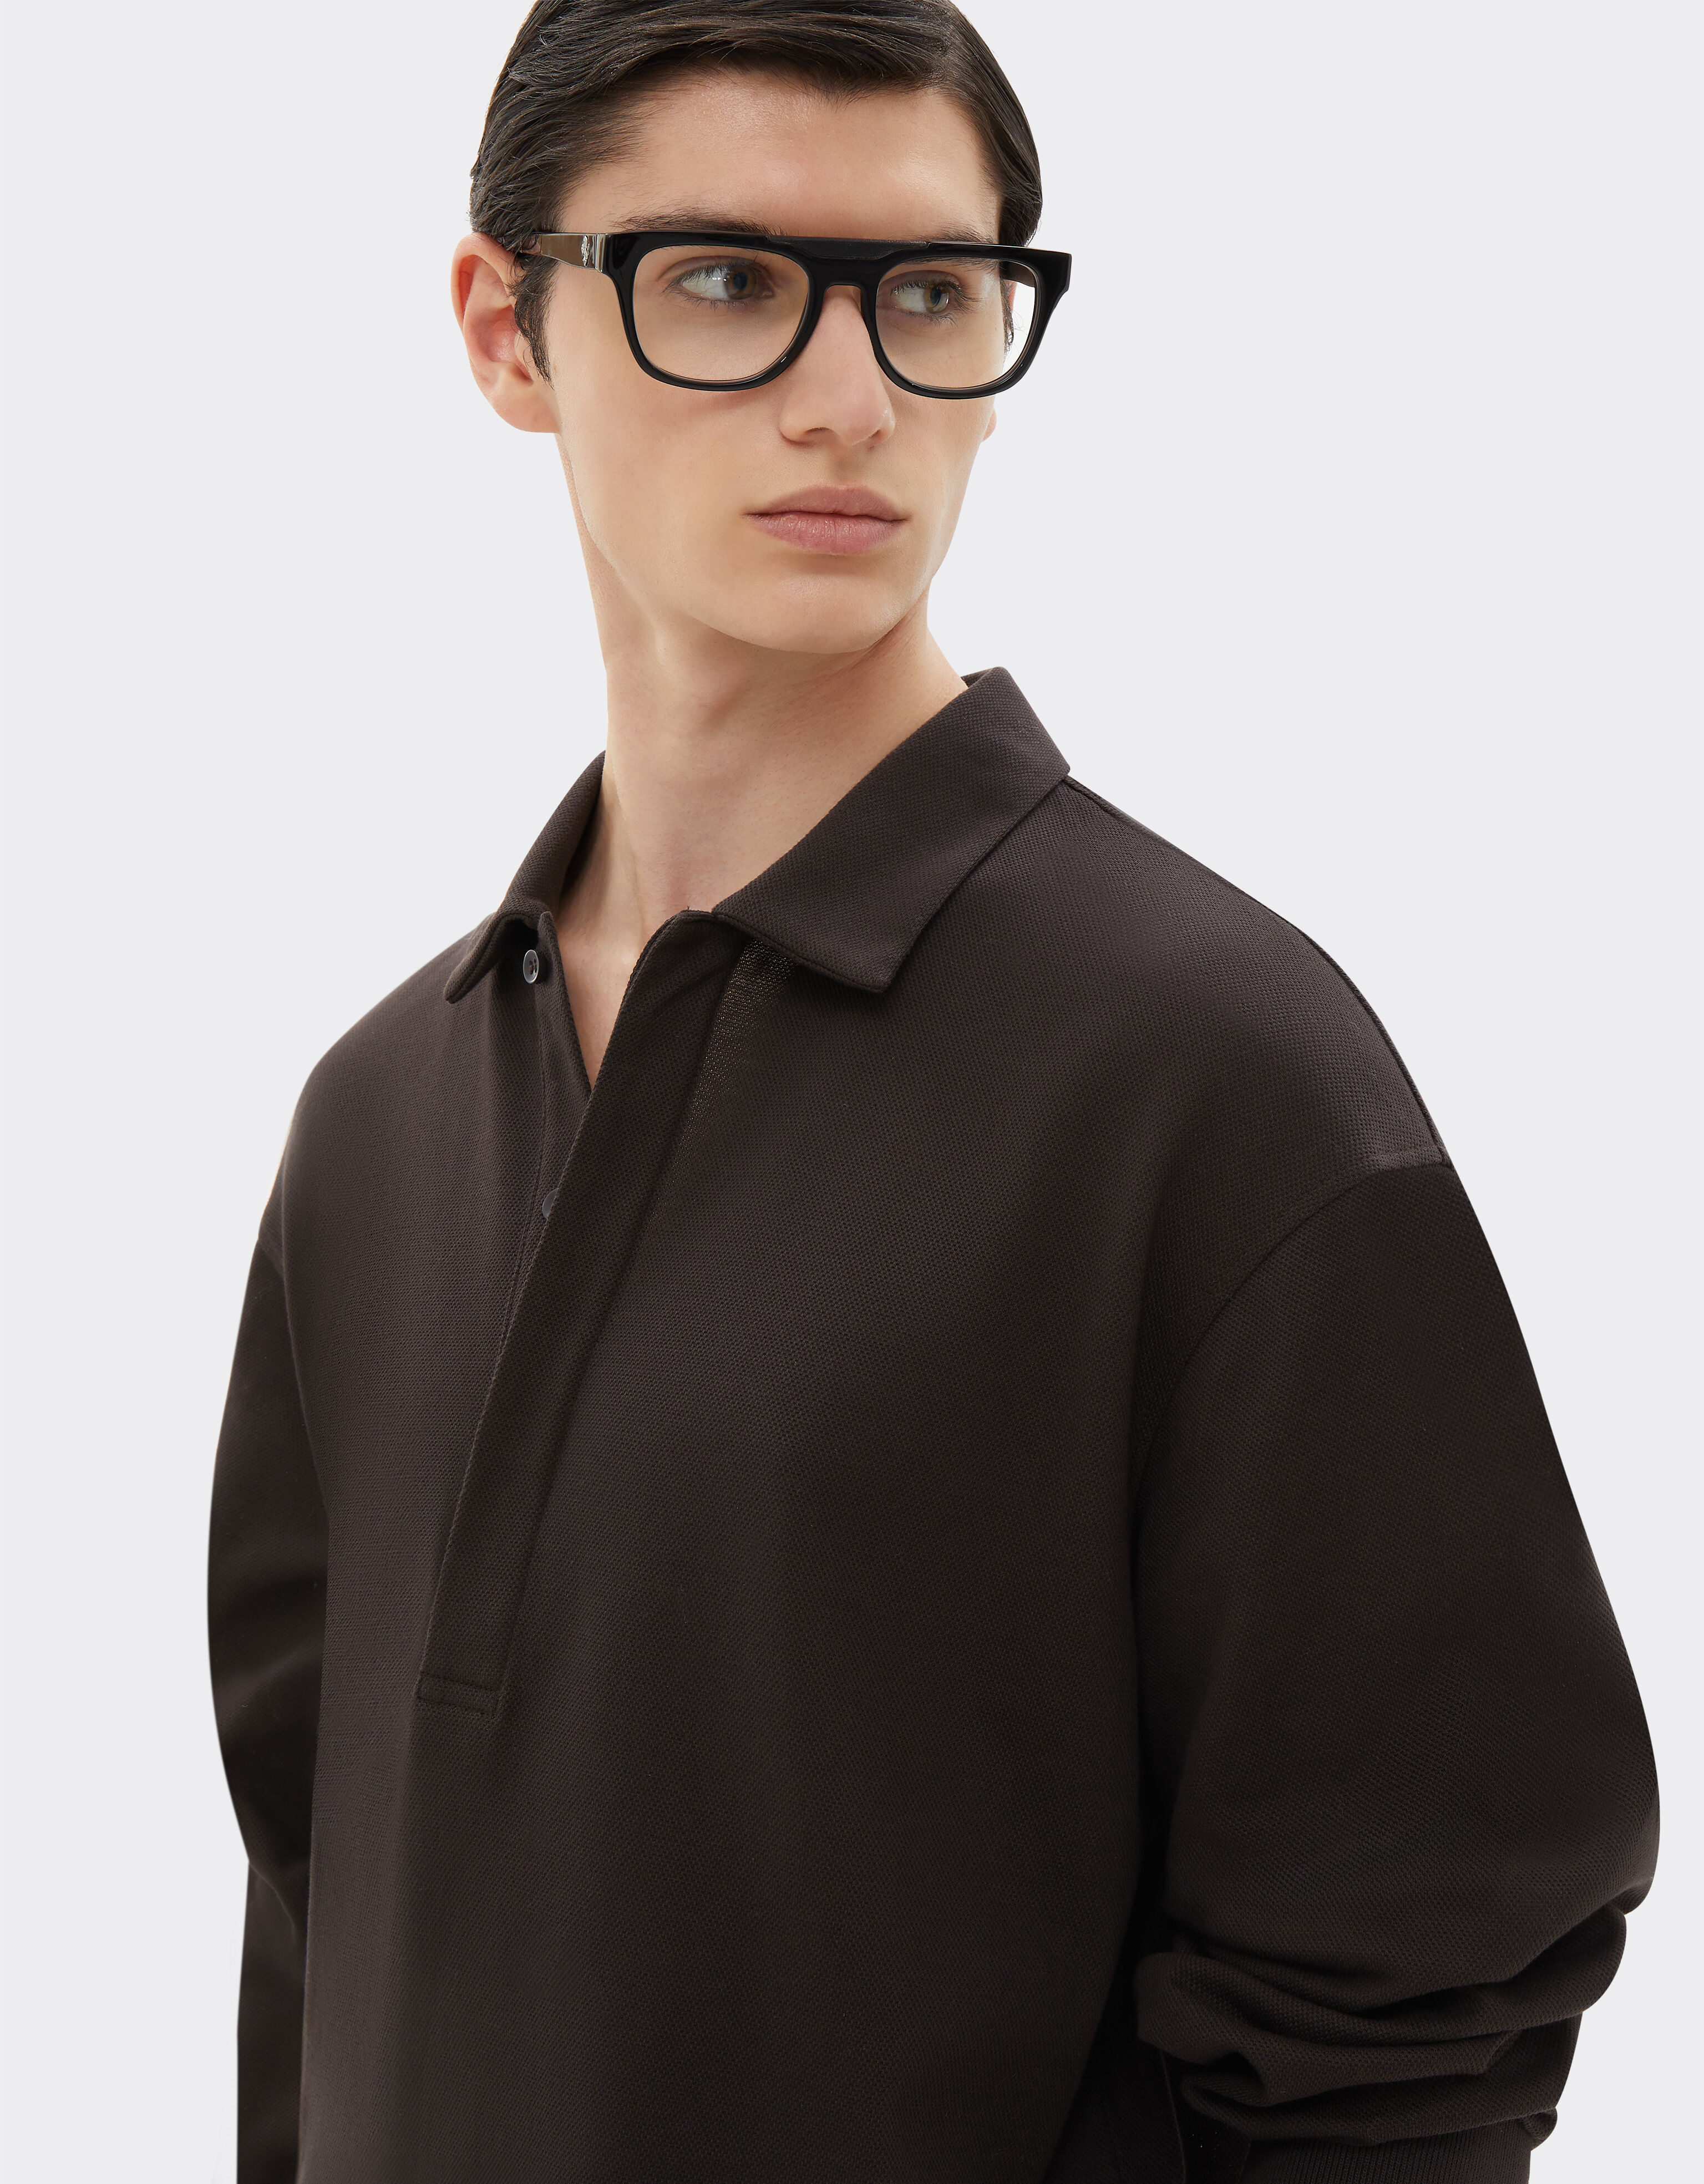 Ferrari Cotton long-sleeved polo shirt Dark Brown 21053f